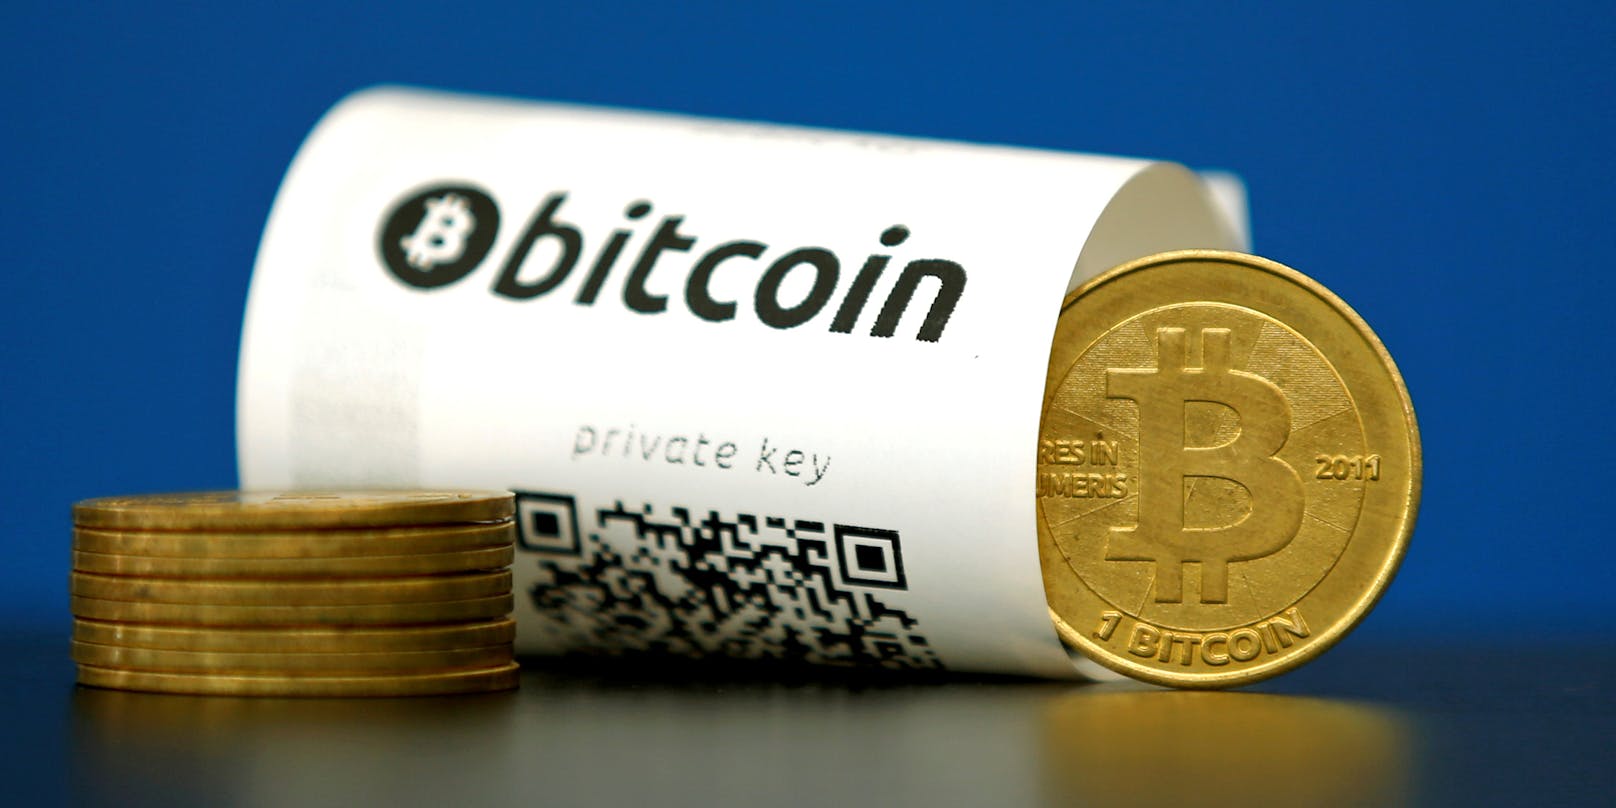 <a href="https://www.heute.at/t/bitcoin-100062586">Bitcoin</a> ist eine rein digitale Währung, mit der sich Geld in Sekundenschnelle und anonym rund um den Globus schicken lässt.